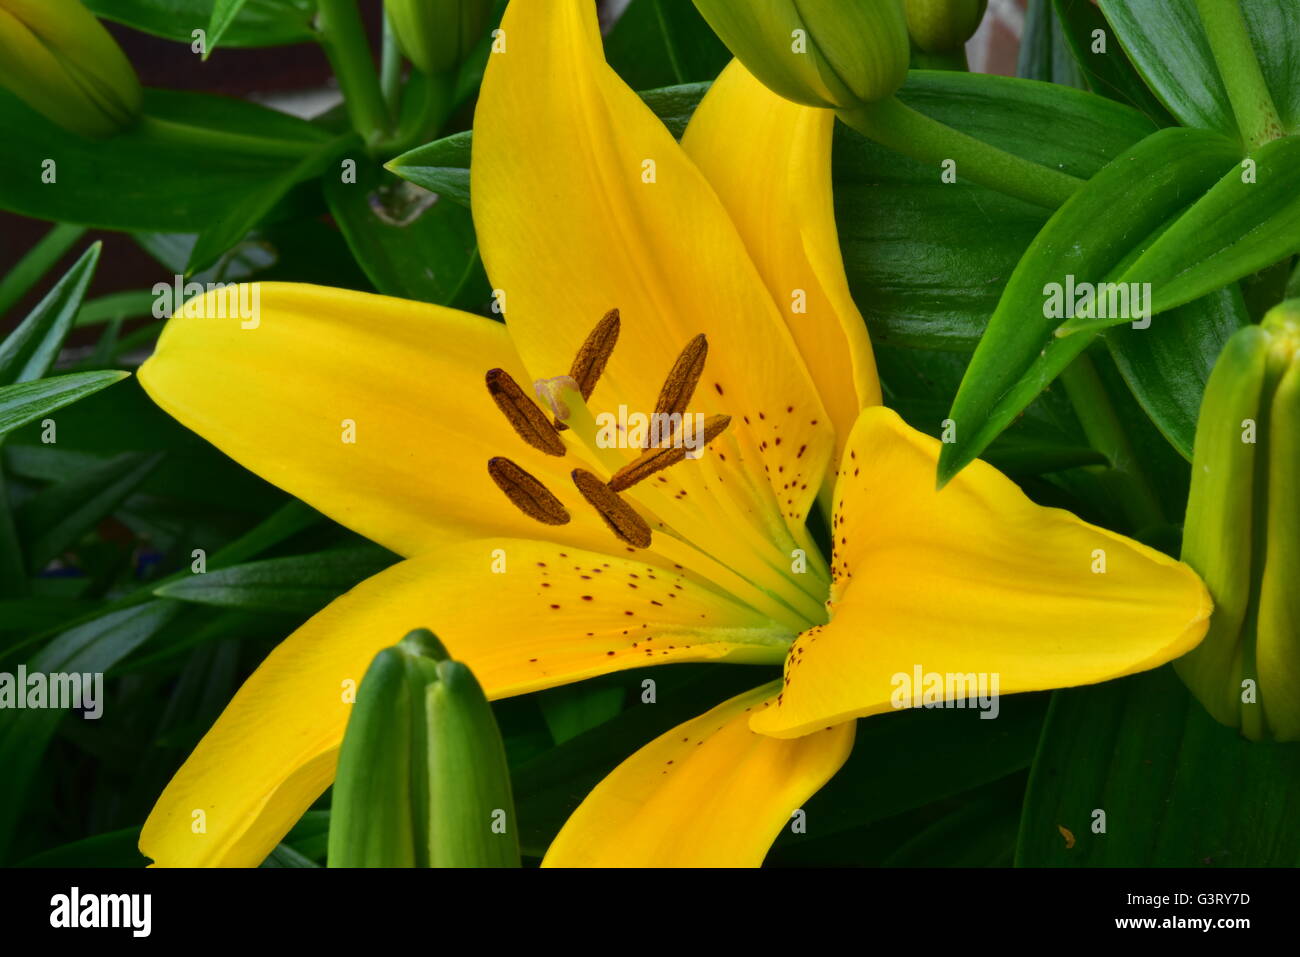 Close-up pictur du lis jaune, Belladonna (Orienpet Lily) montrant les pétales, la stigmatisation, les sépales, étamines, anthères pollen et filament. Banque D'Images